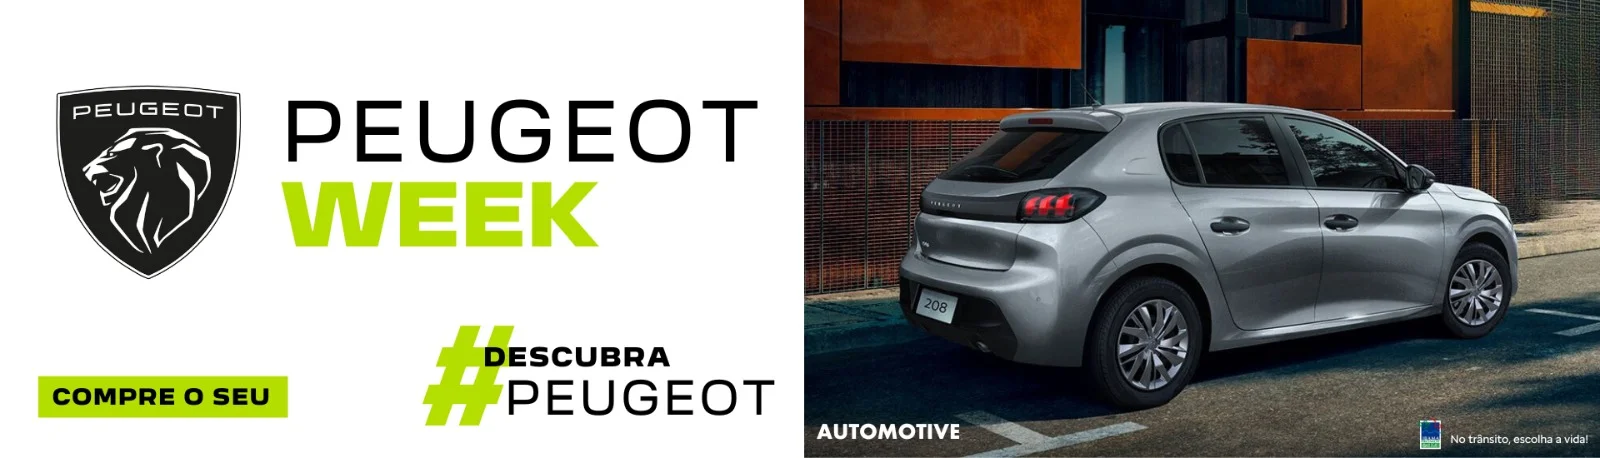 Peugeot Week